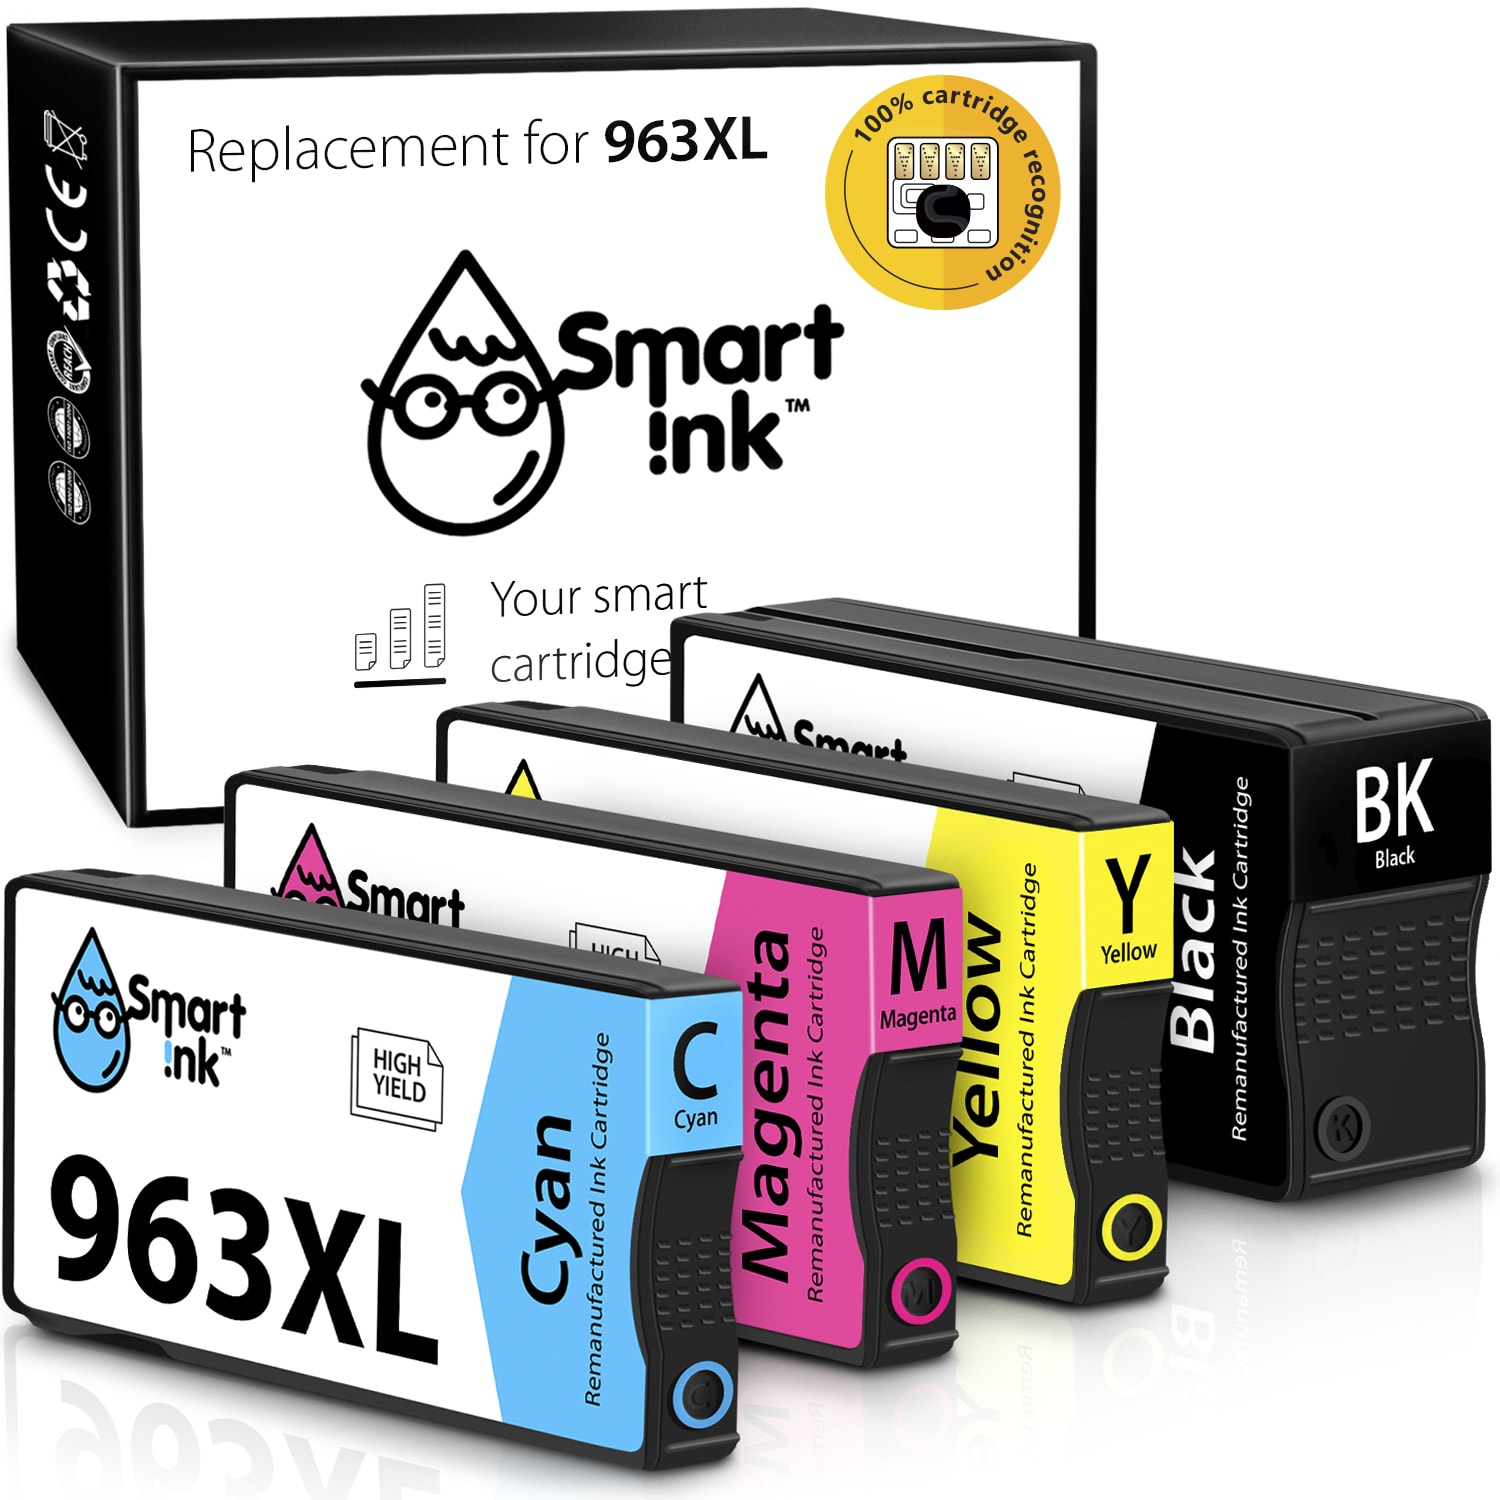 einkshop 963XL 967XL Replacement Ink Cartridge for HP OfficeJet